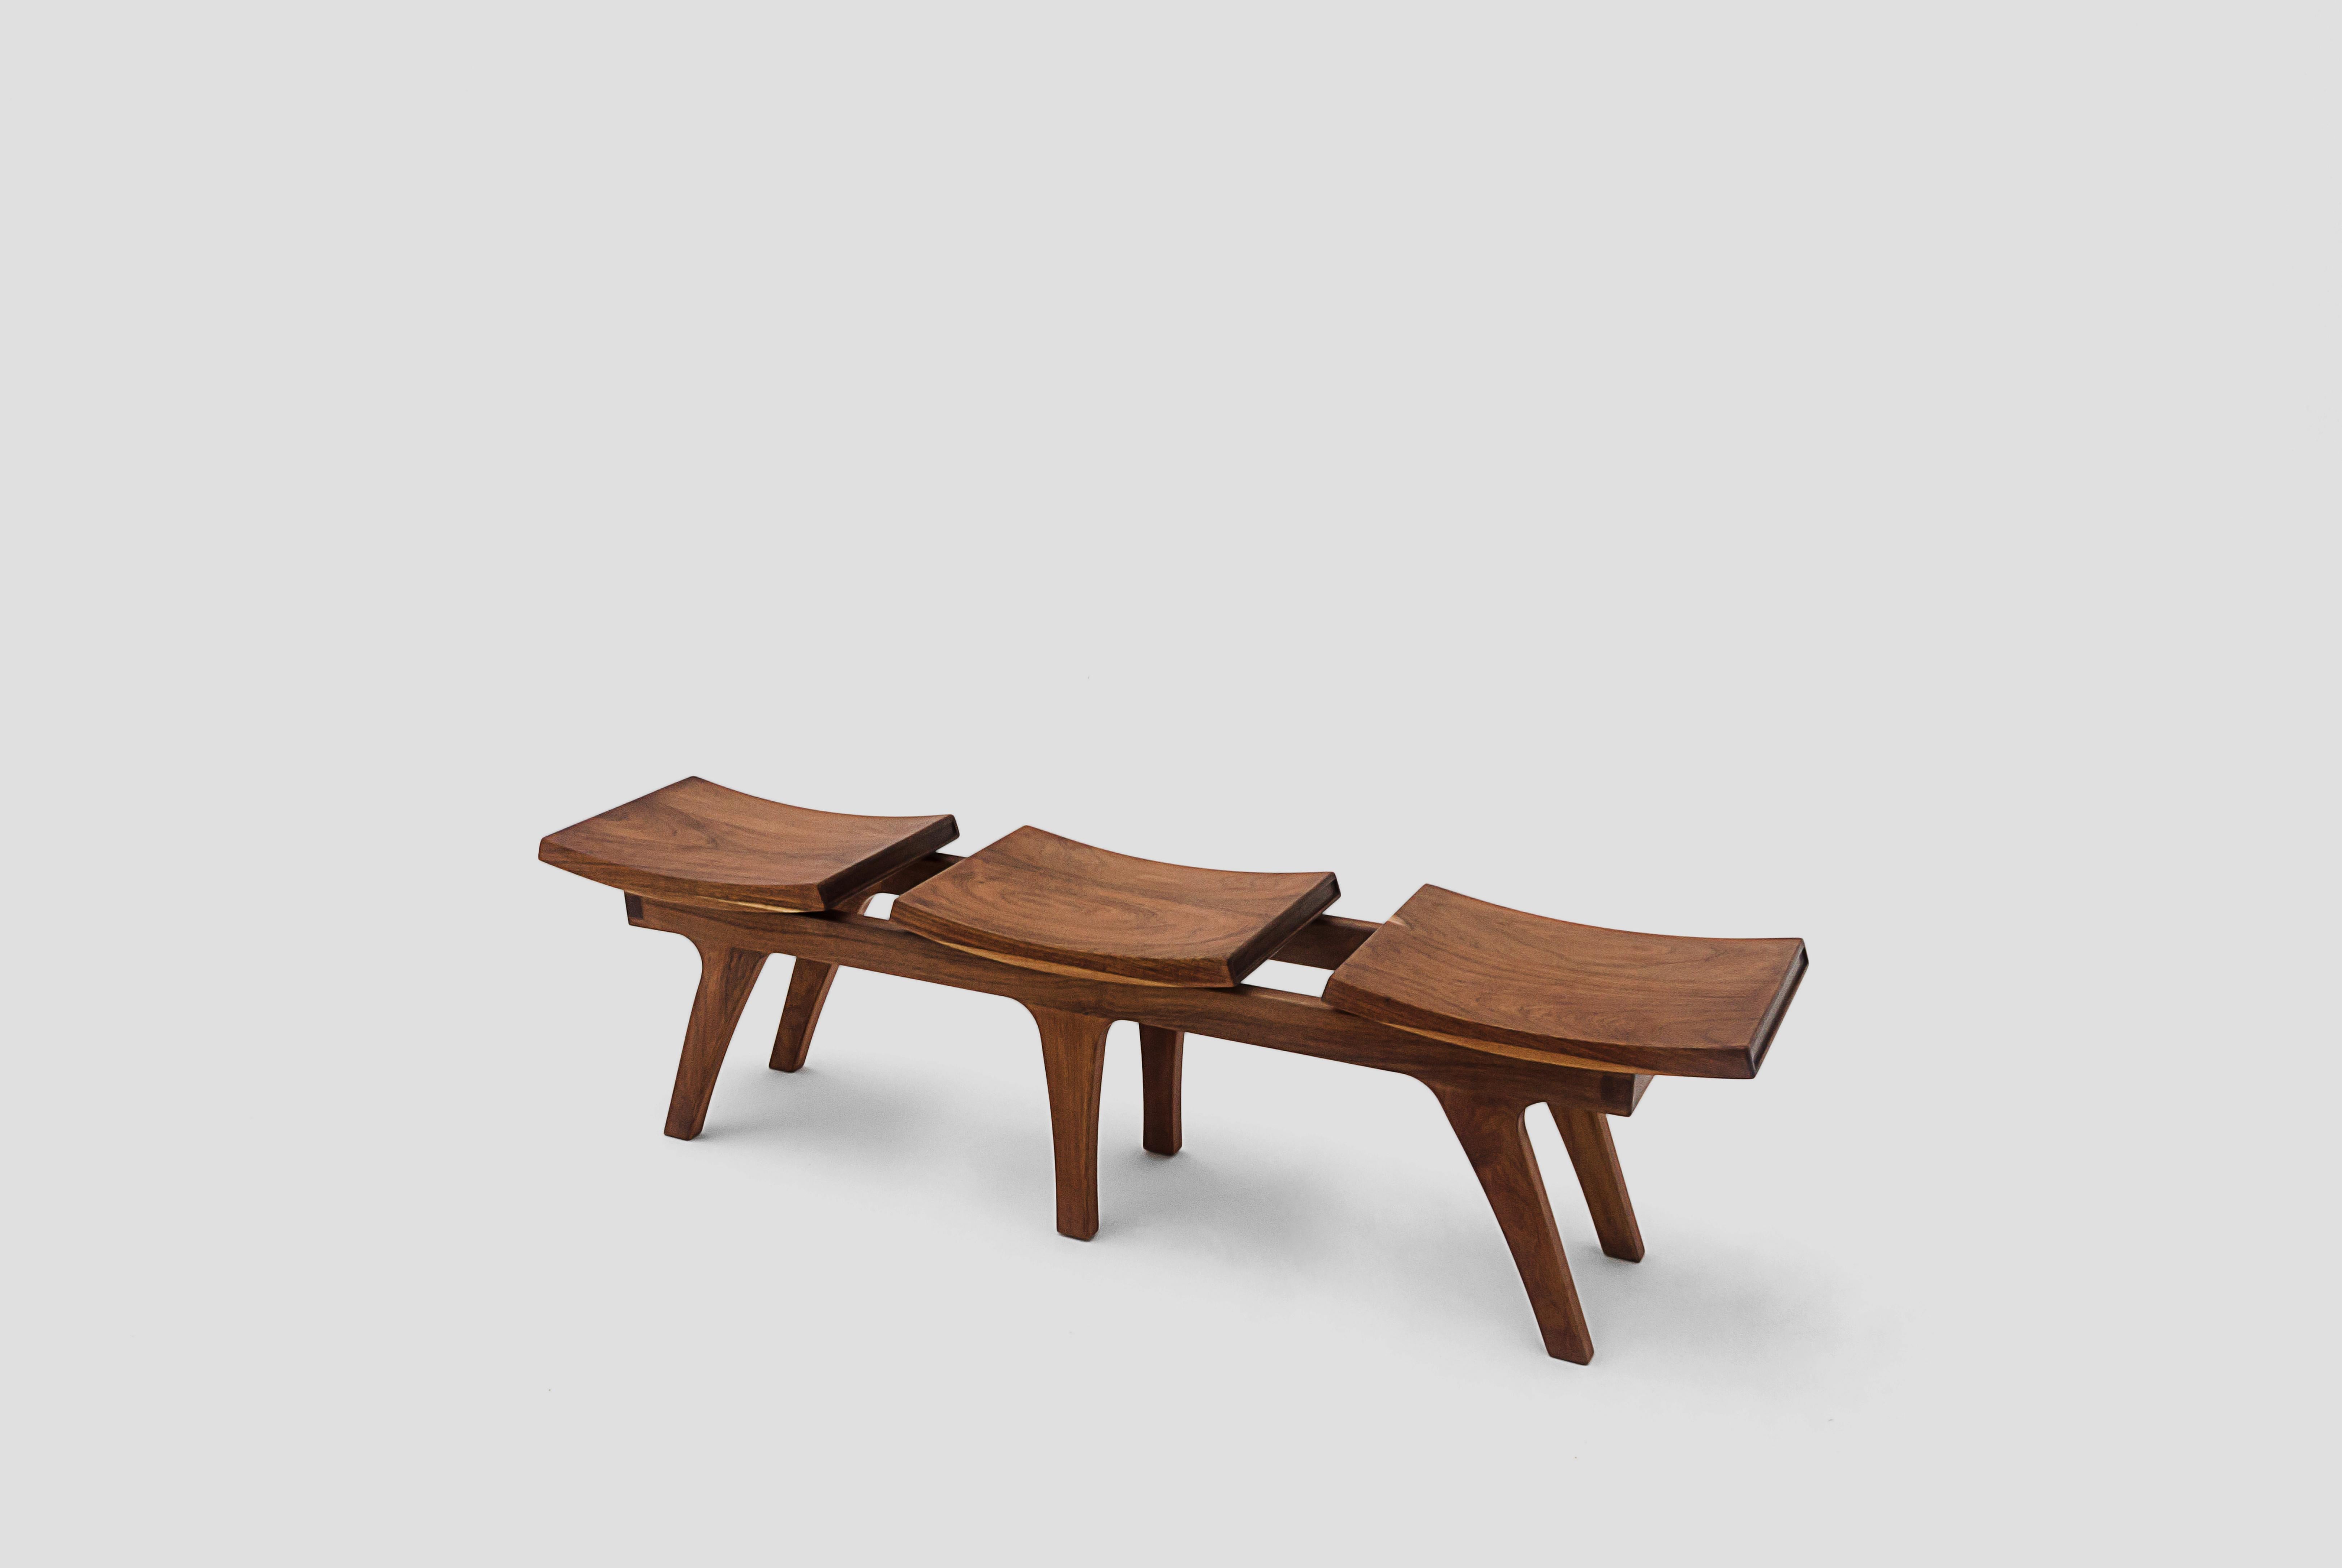 Tripot, Solid Walnut Wood Bench, Stool with One Seats In New Condition In Estado de Mexico CP, Estado de Mexico